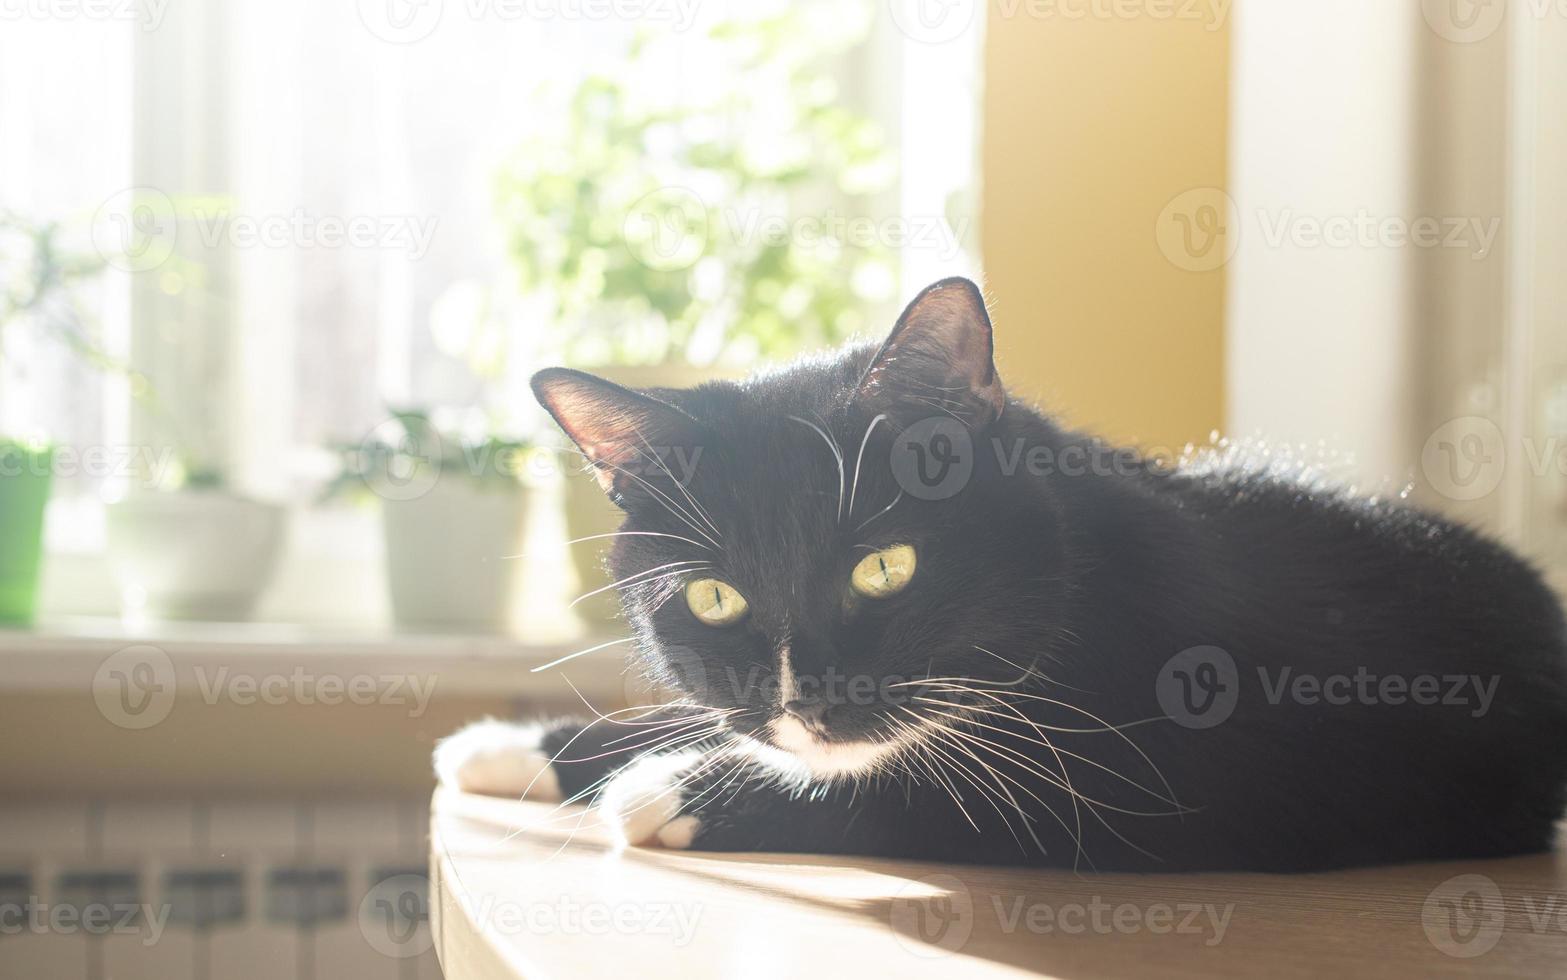 lustige schwarze katze liegt auf dem tisch neben dem fenster mit grünen hauspflanzen und sonnen sich in der sonne. foto